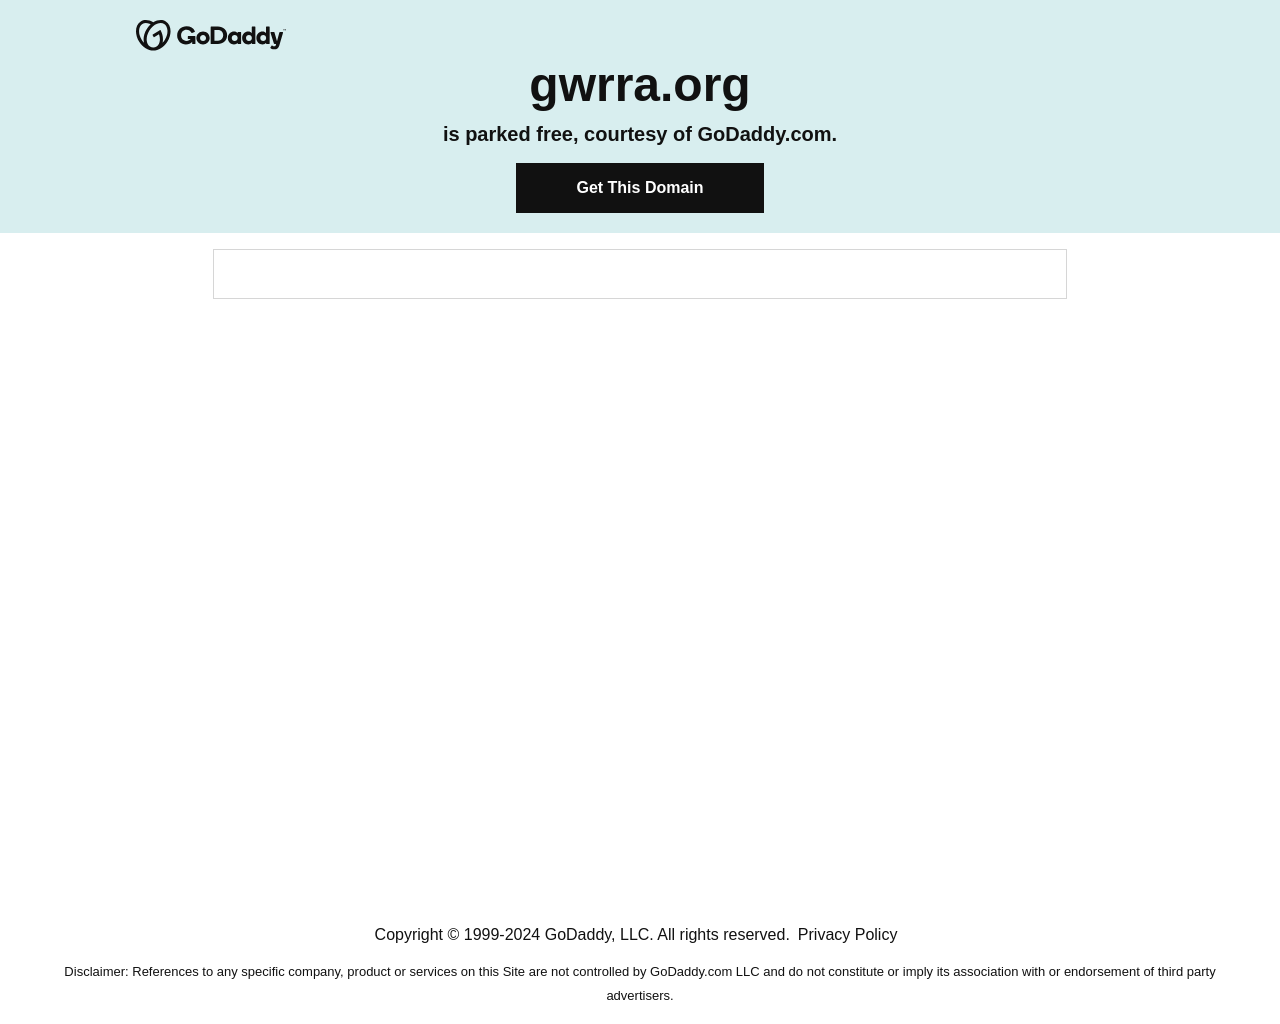 gwrra.org